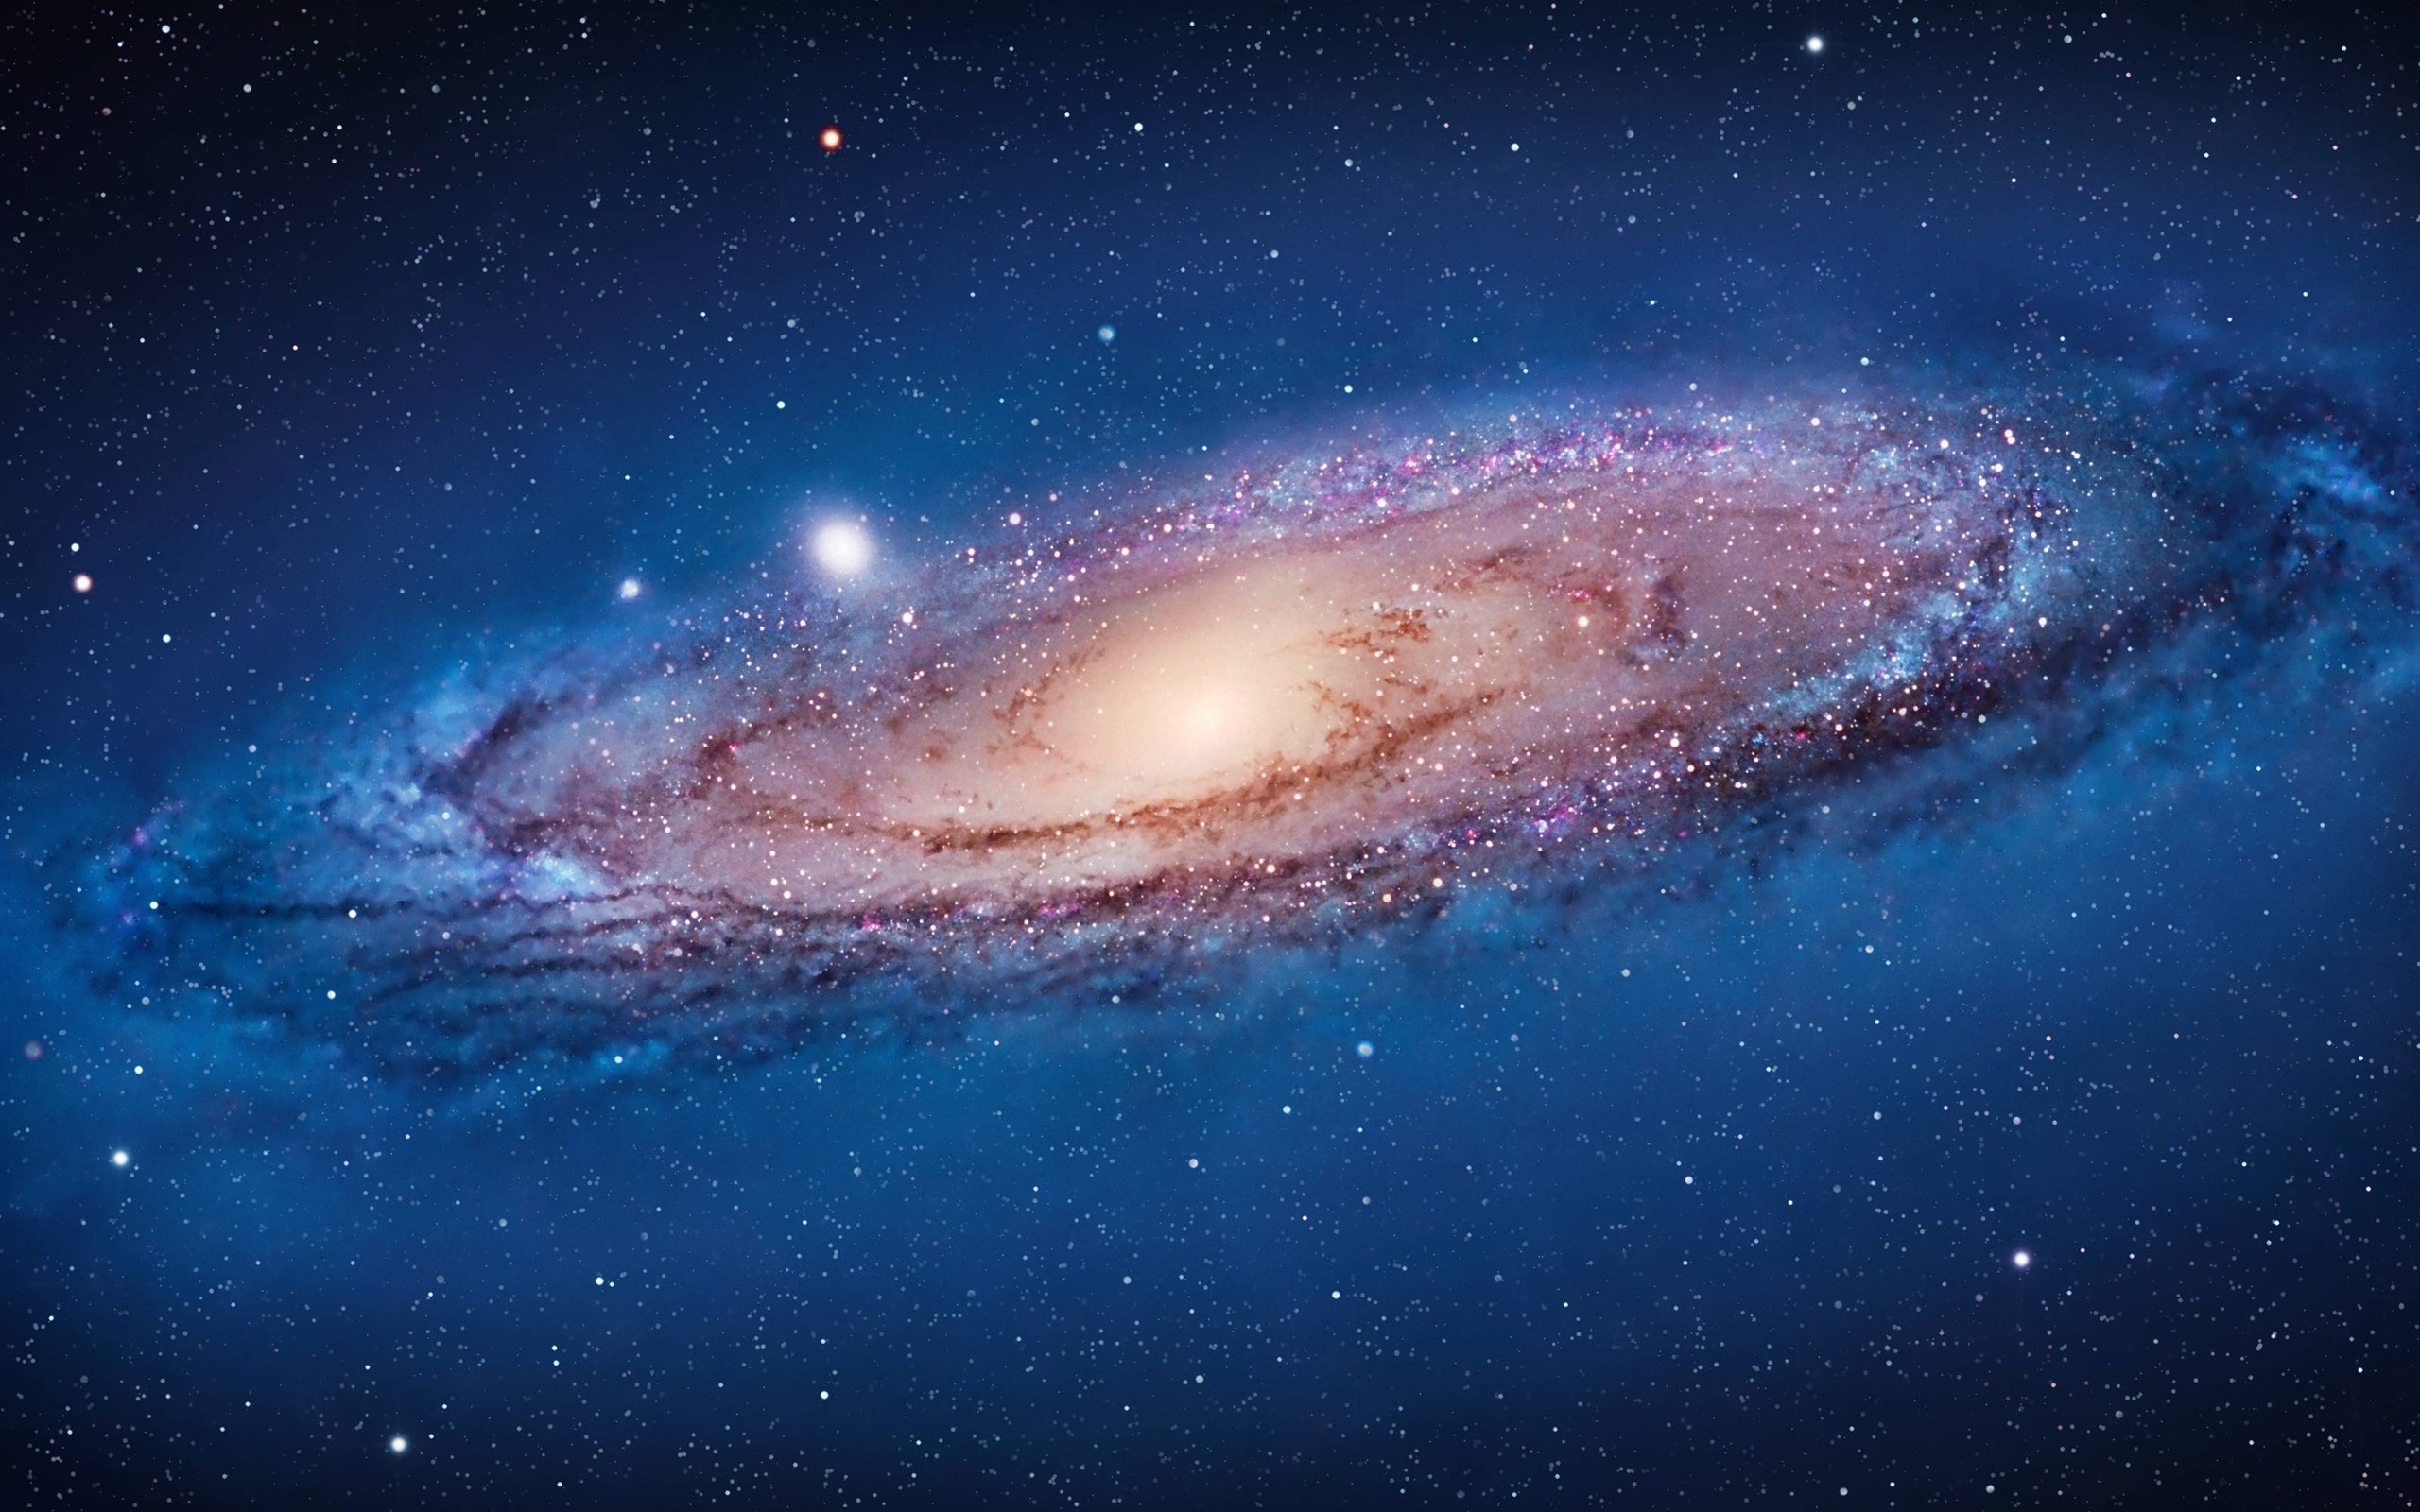 仙女座星系在空间壁纸1280x1024分辨率查看